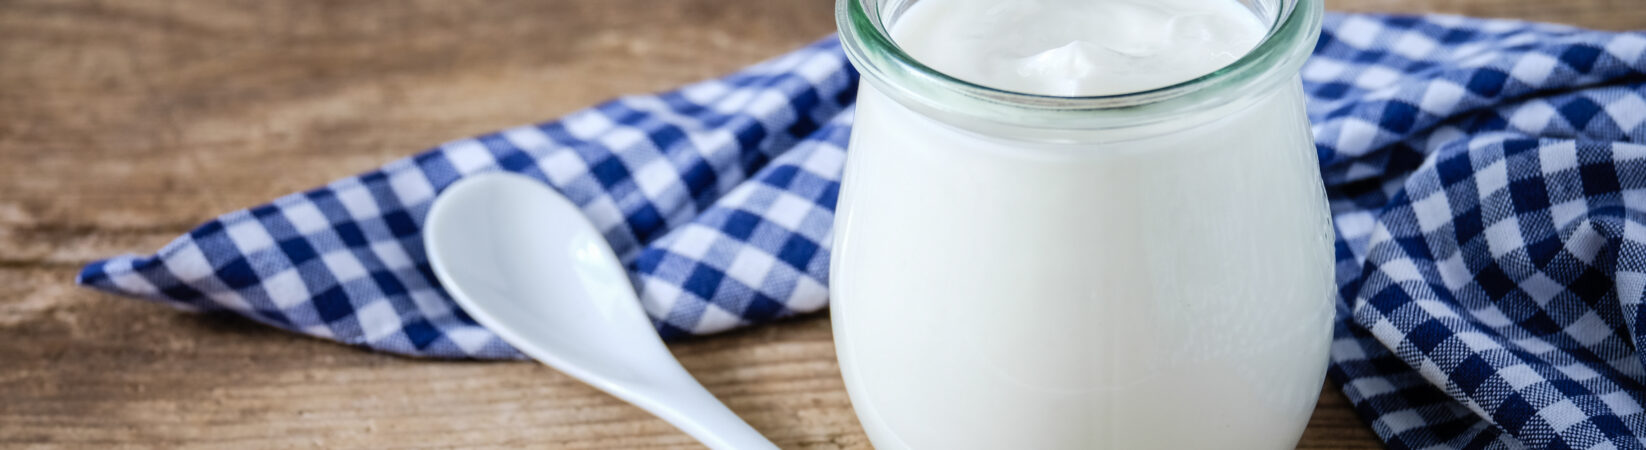 Worauf Du beim Kauf von Joghurt achten musst